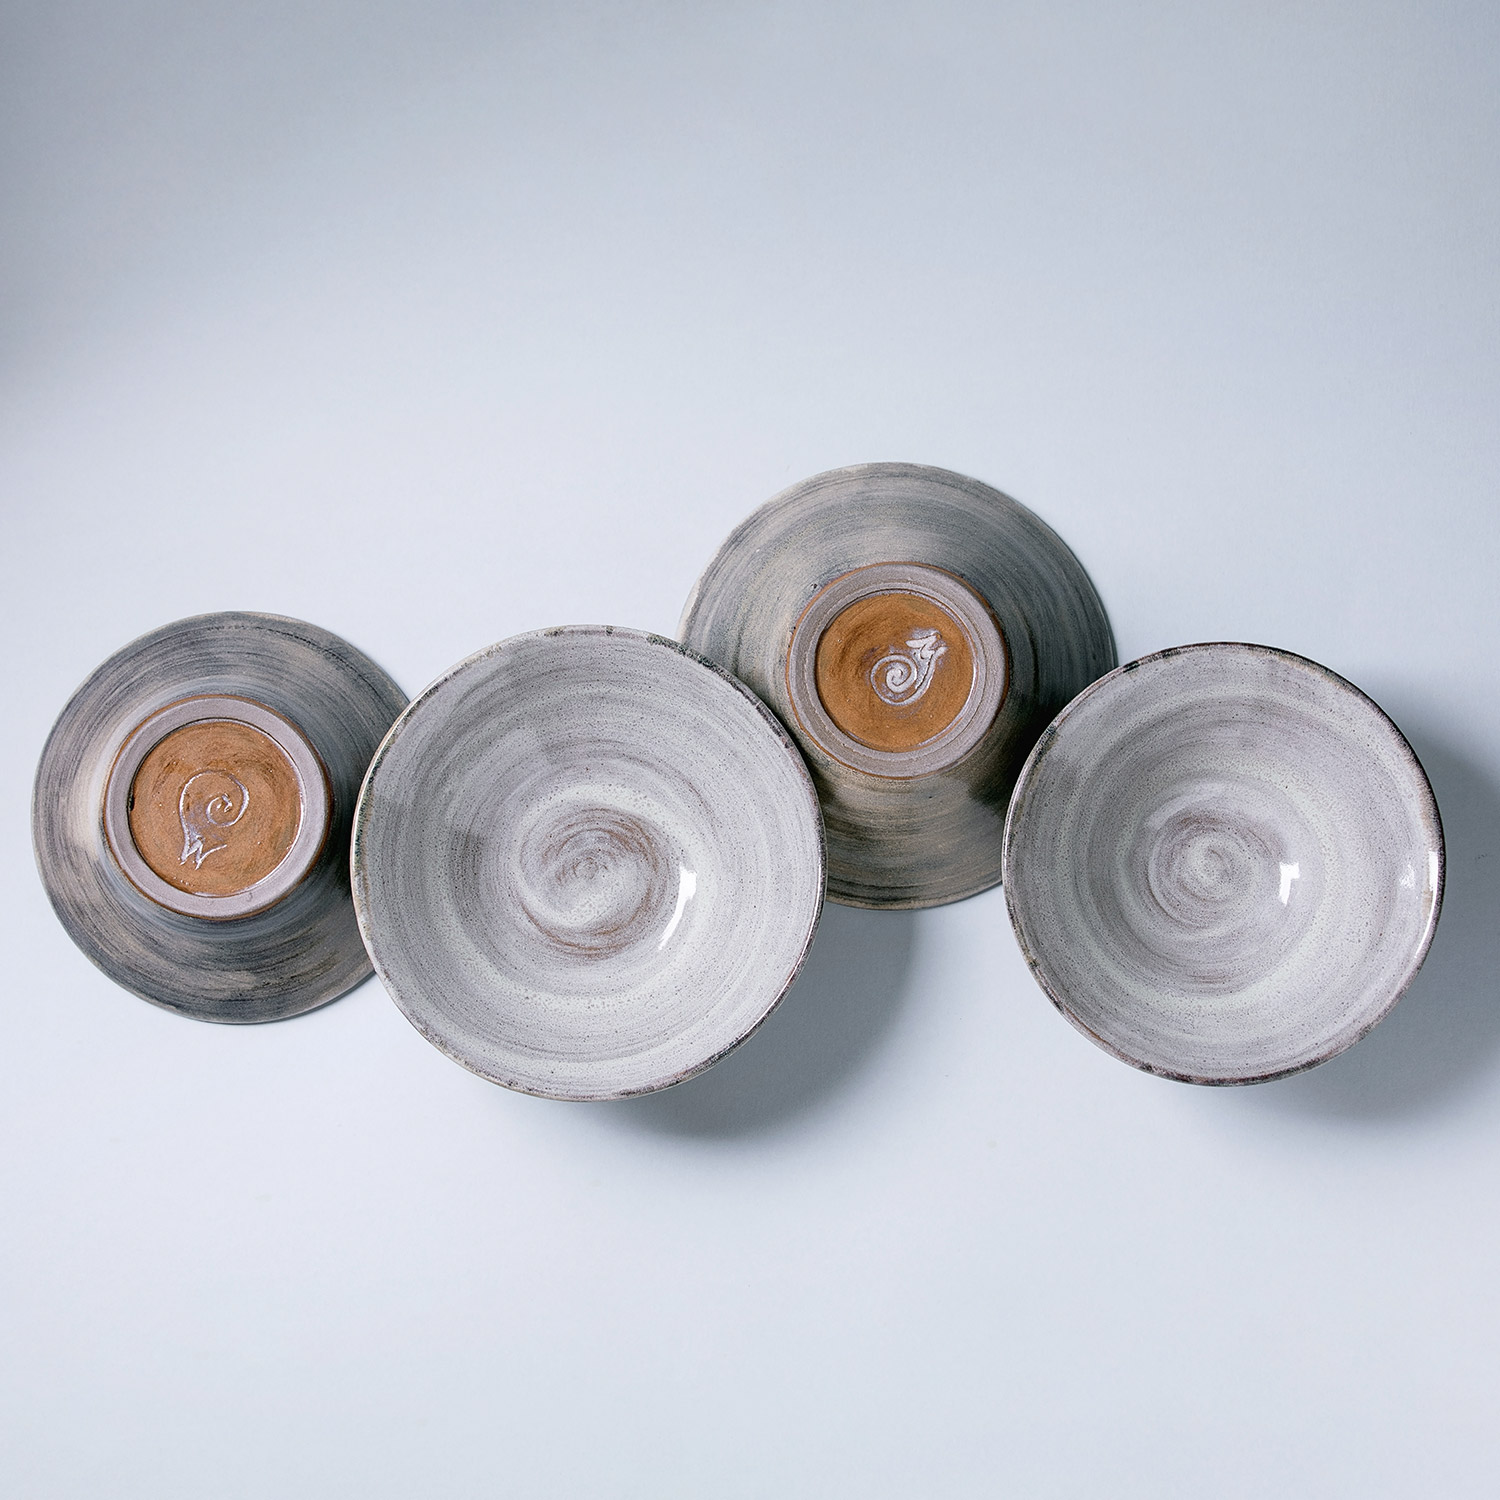 Handmade Rustic Ceramic bowl Home decor textured gray glaze 